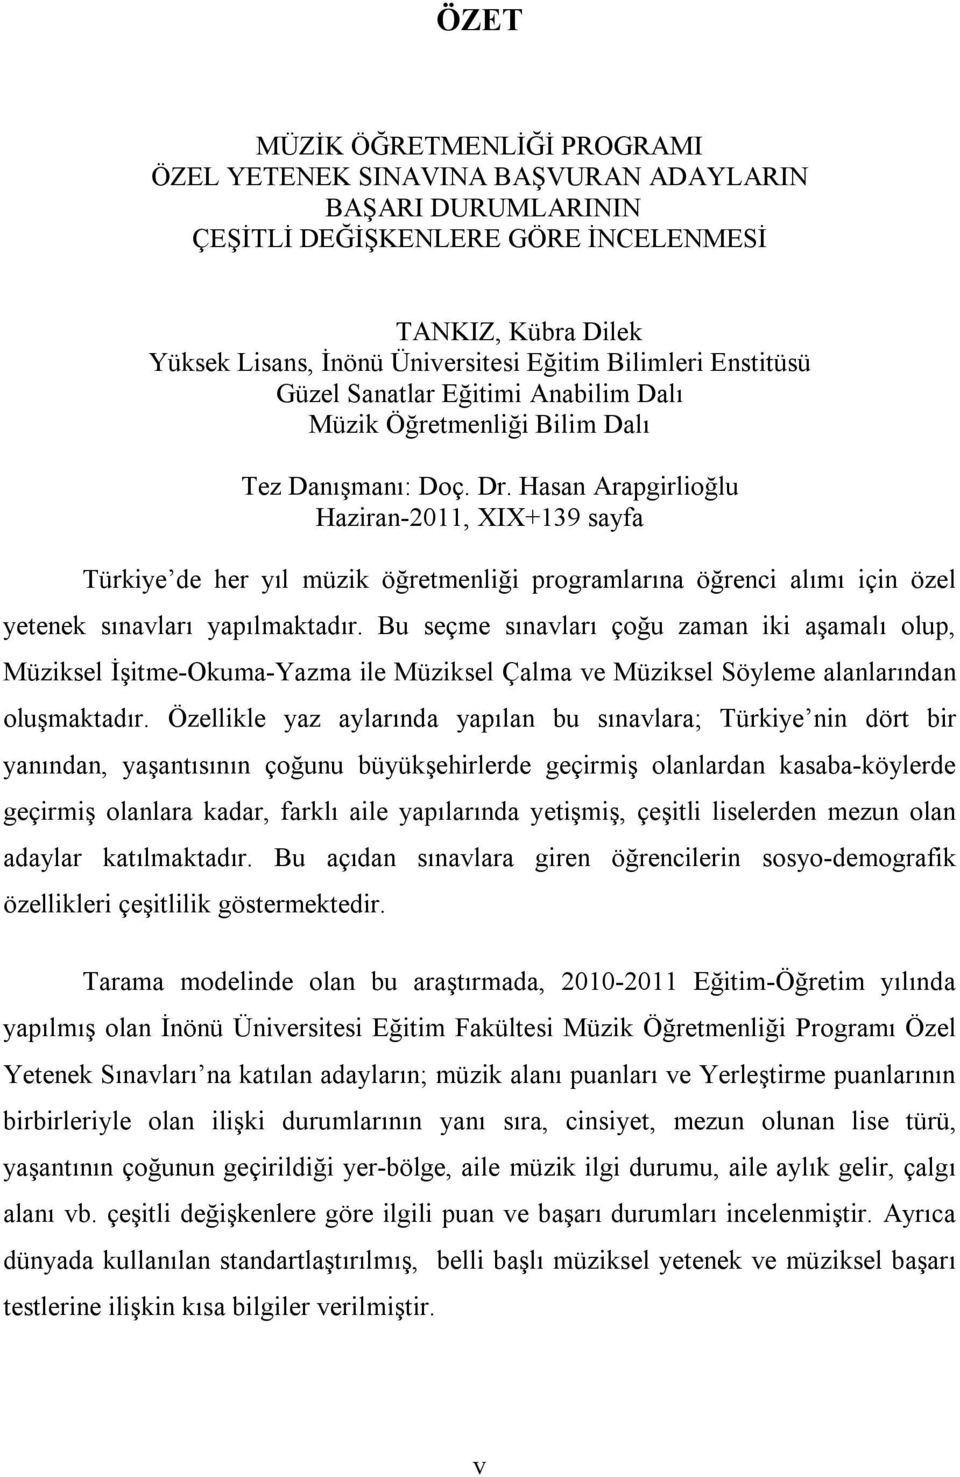 Hasan Arapgirlioğlu Haziran-2011, XIX+139 sayfa Türkiye de her yıl müzik öğretmenliği programlarına öğrenci alımı için özel yetenek sınavları yapılmaktadır.